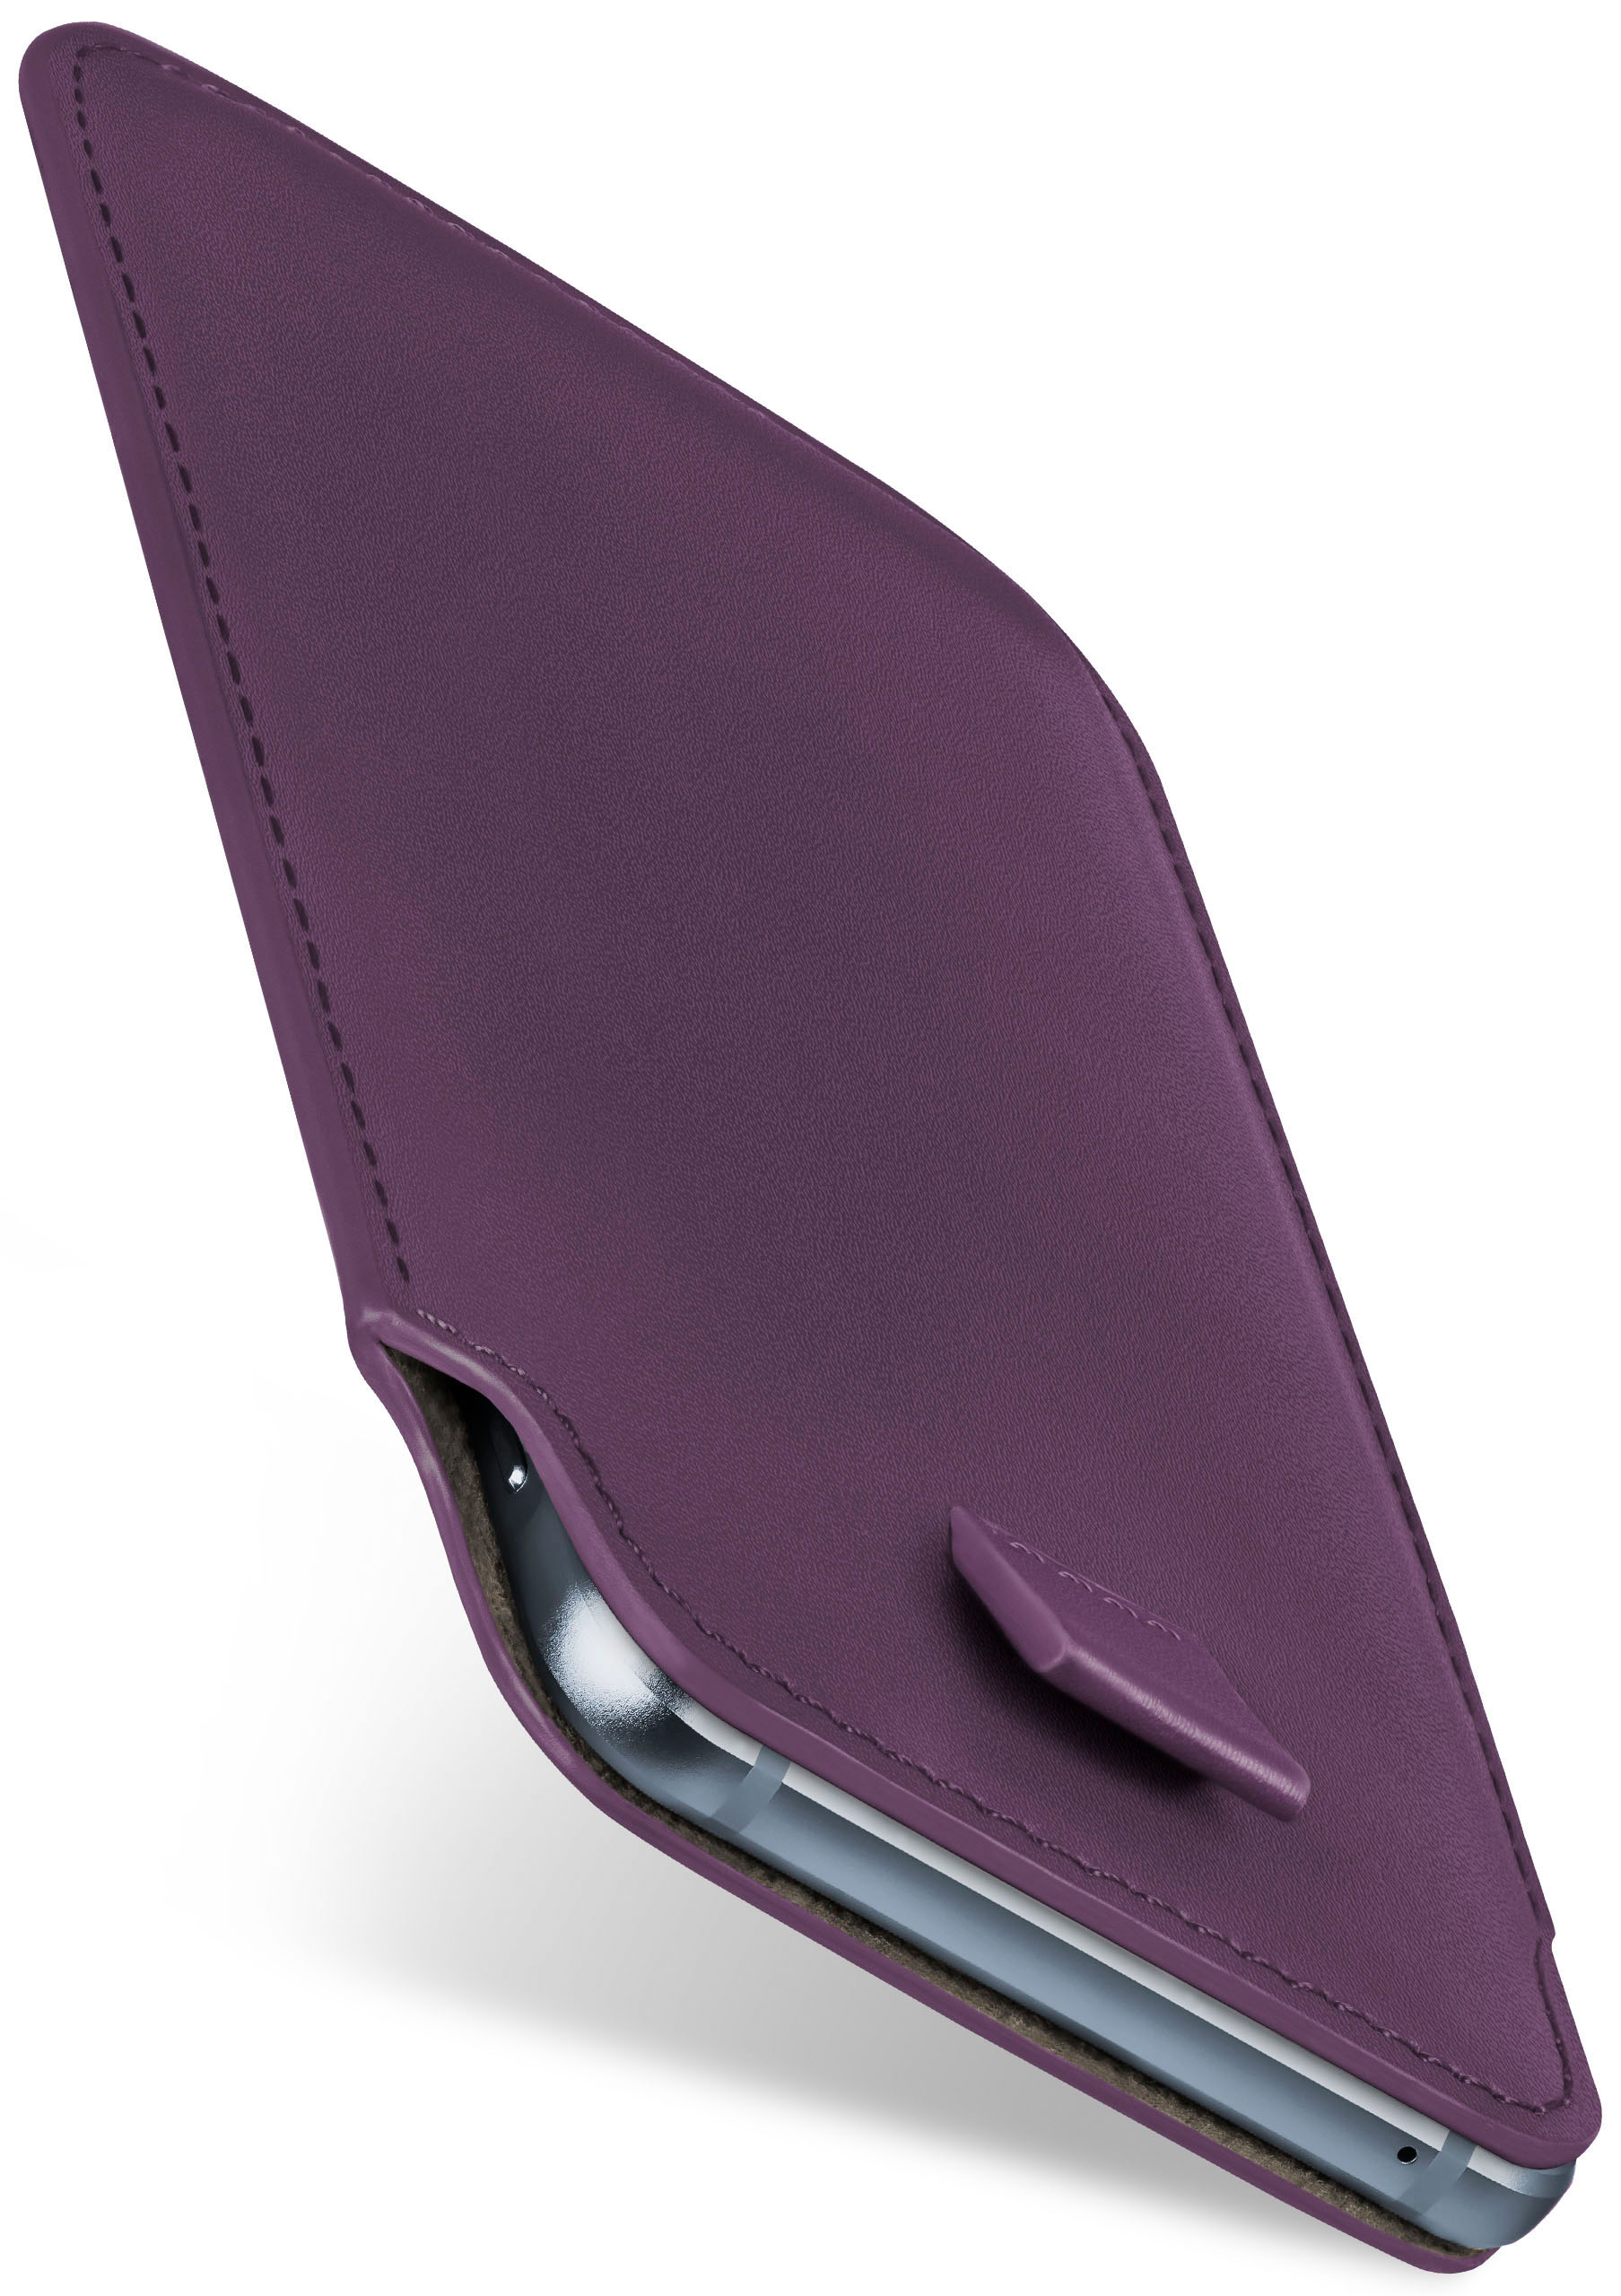 Cover, Moto Power, Motorola, Case, Full G8 Indigo-Violet MOEX Slide